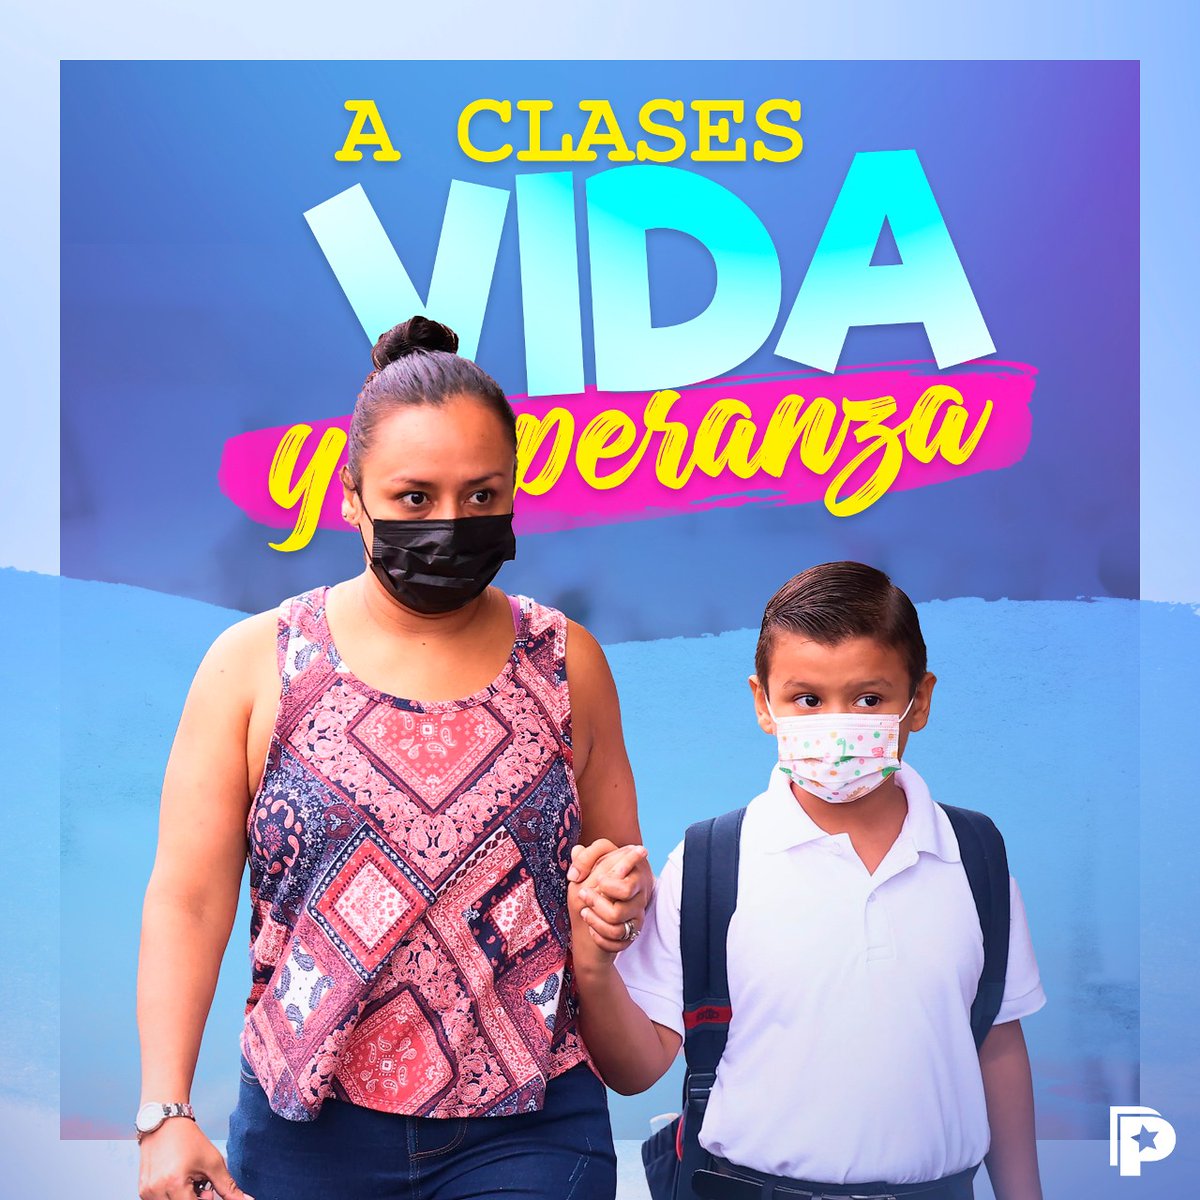 Los estudiantes retornan #AClasesVidayEsperanza 📚 en la modalidad regular que comprende; educación inicial, primaria, educación especial y secundaria con entusiasmo, alegría y energía para continuar sus estudios. 🏫👩🏻‍🏫🎒 #Nicaragua